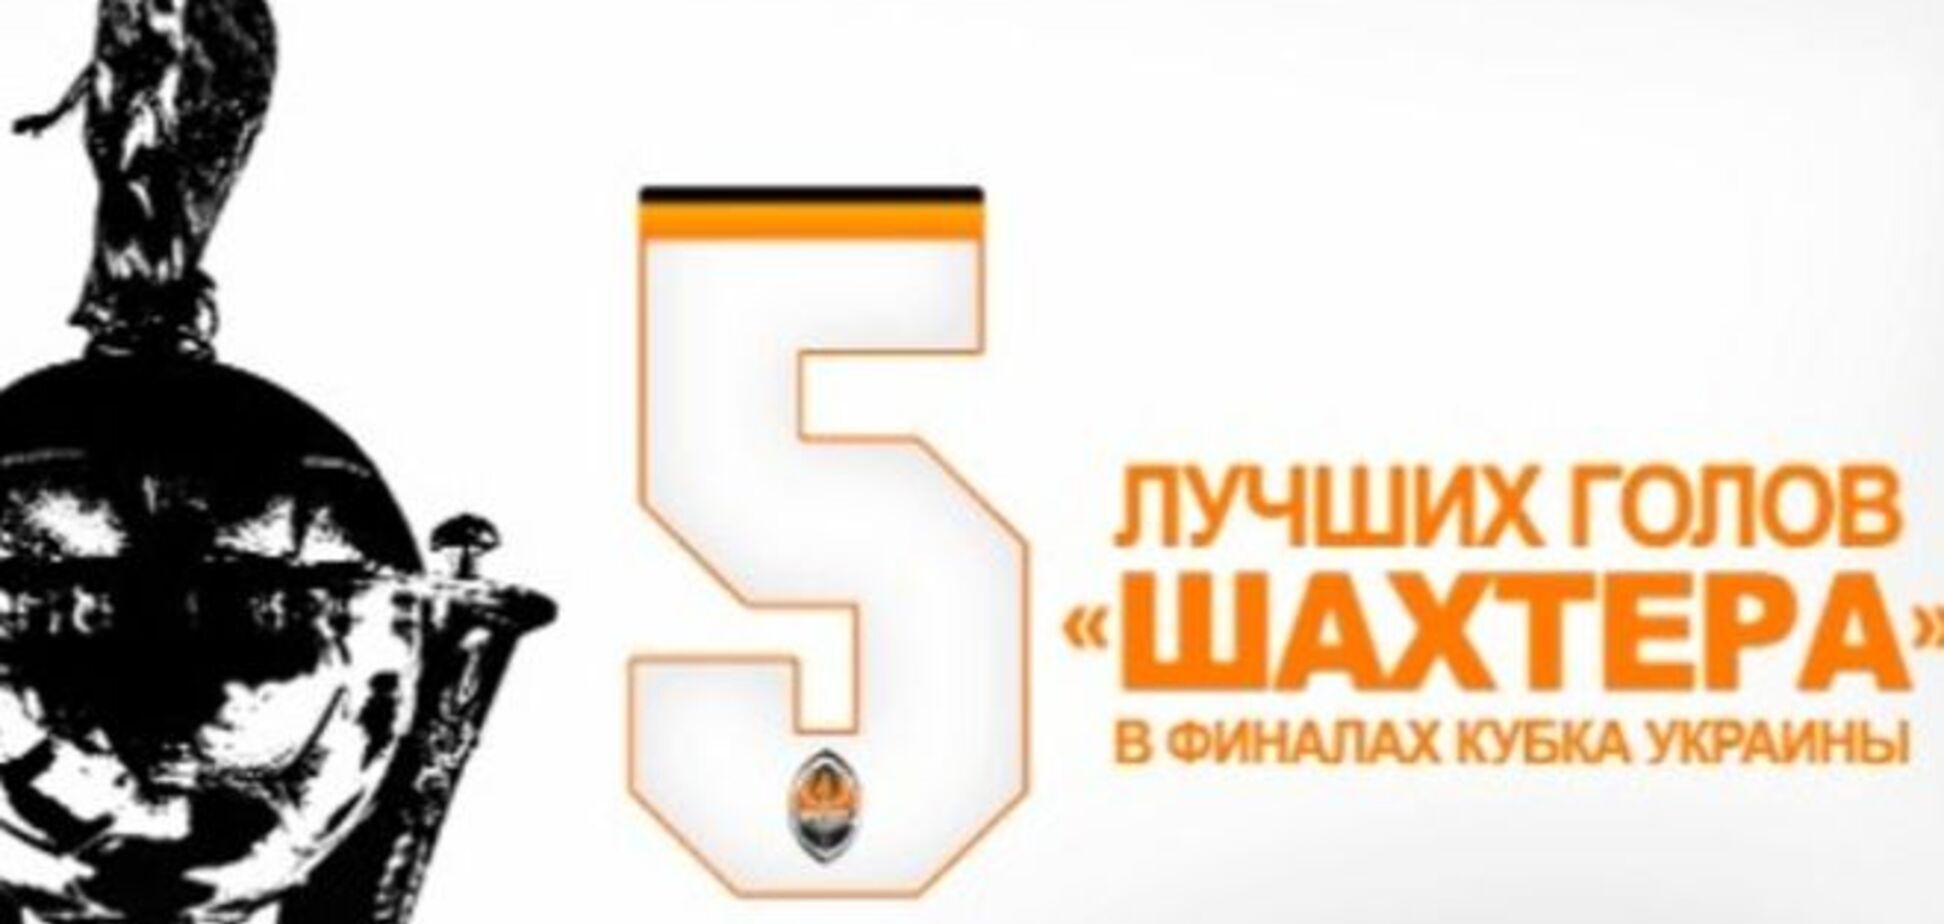 Топ-5 голов 'Шахтера' в финалах Кубка Украины: эффектное видео